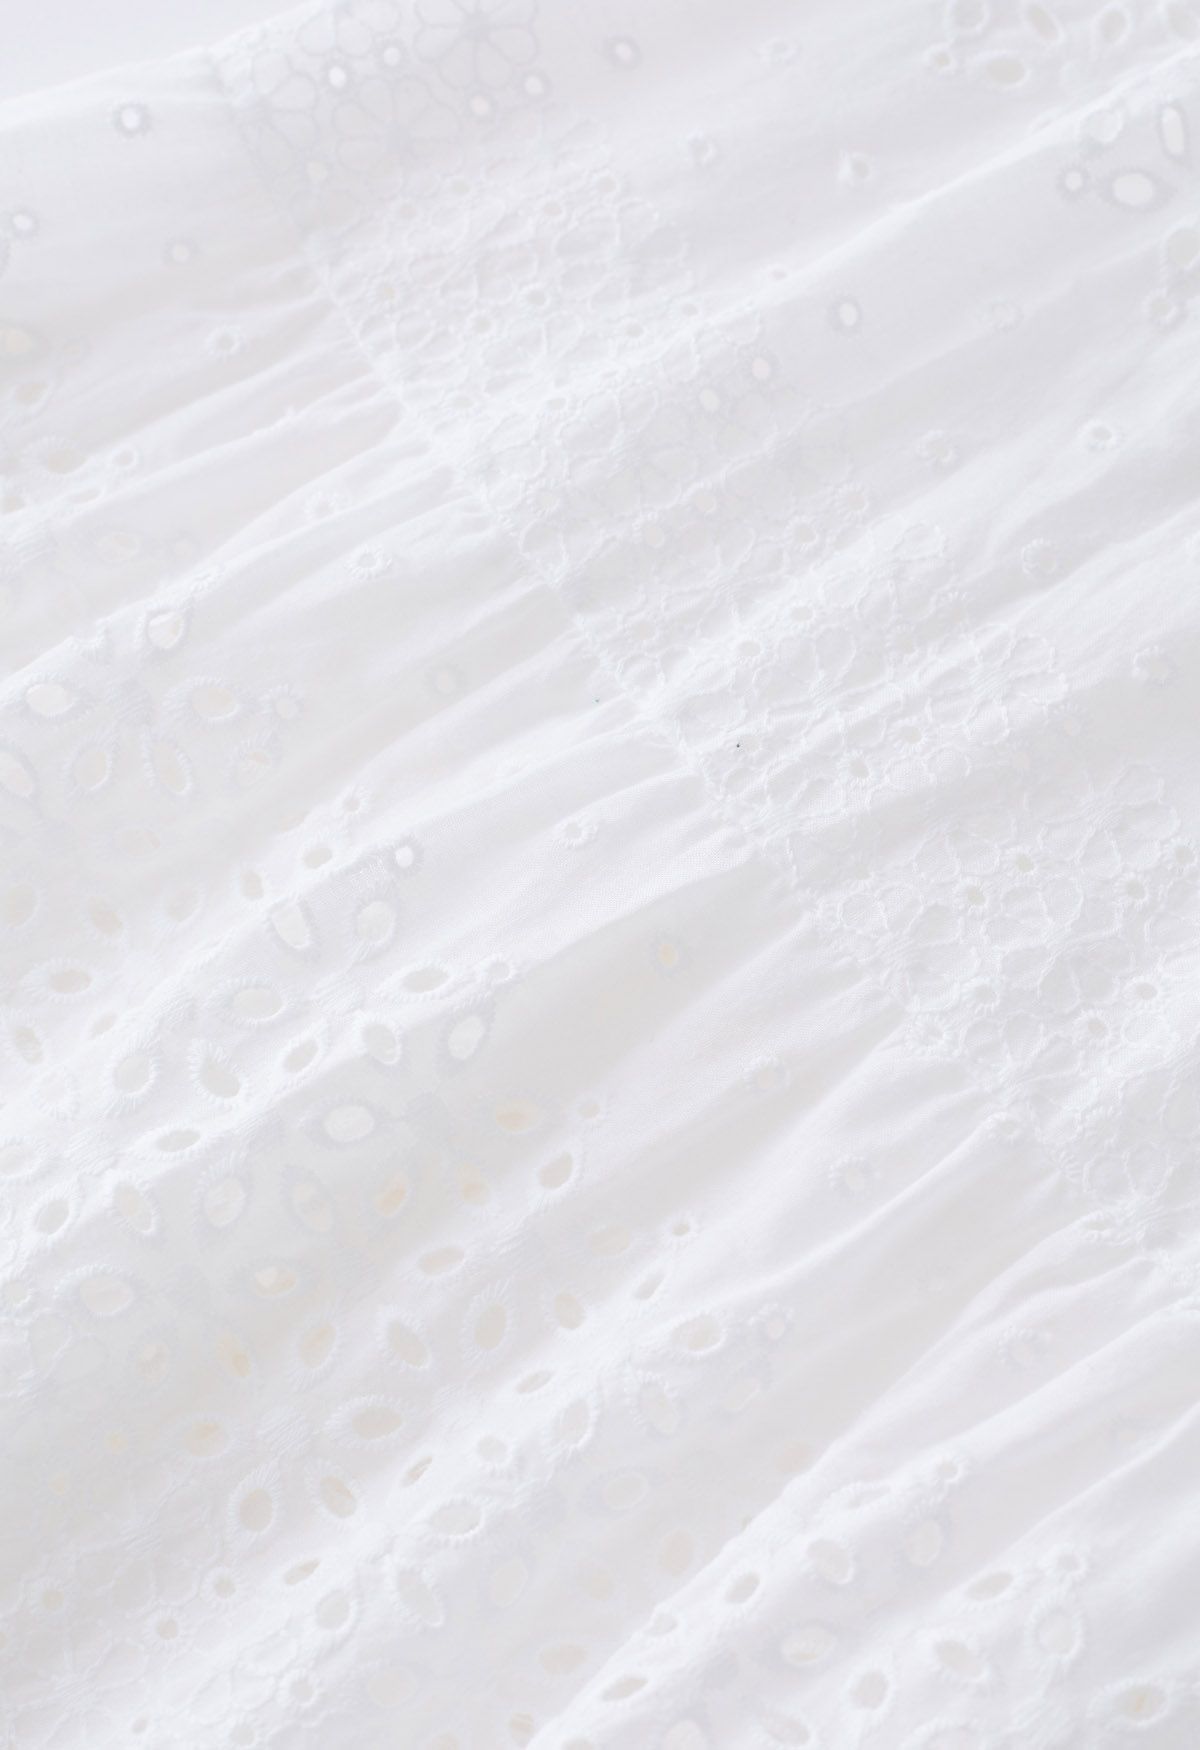 Falda midi de algodón con ojales bordados Floret en blanco